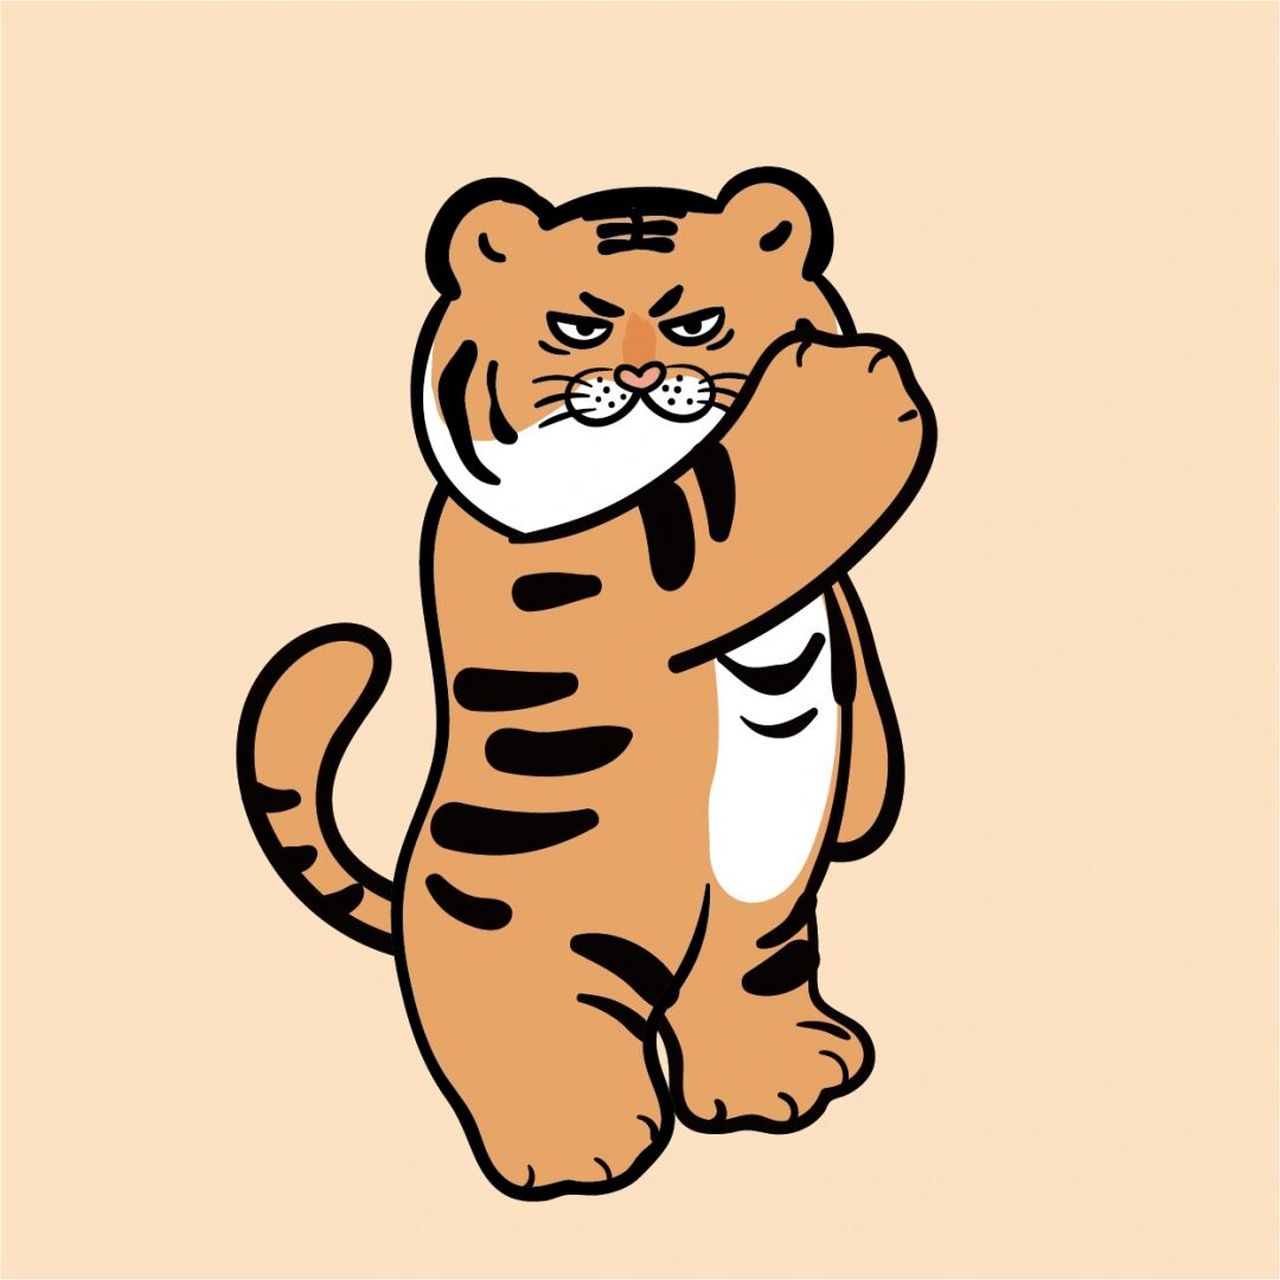 大王是老虎ip表情包卡通2022虎年新年头像 谢谢喜欢 ip大王是老虎